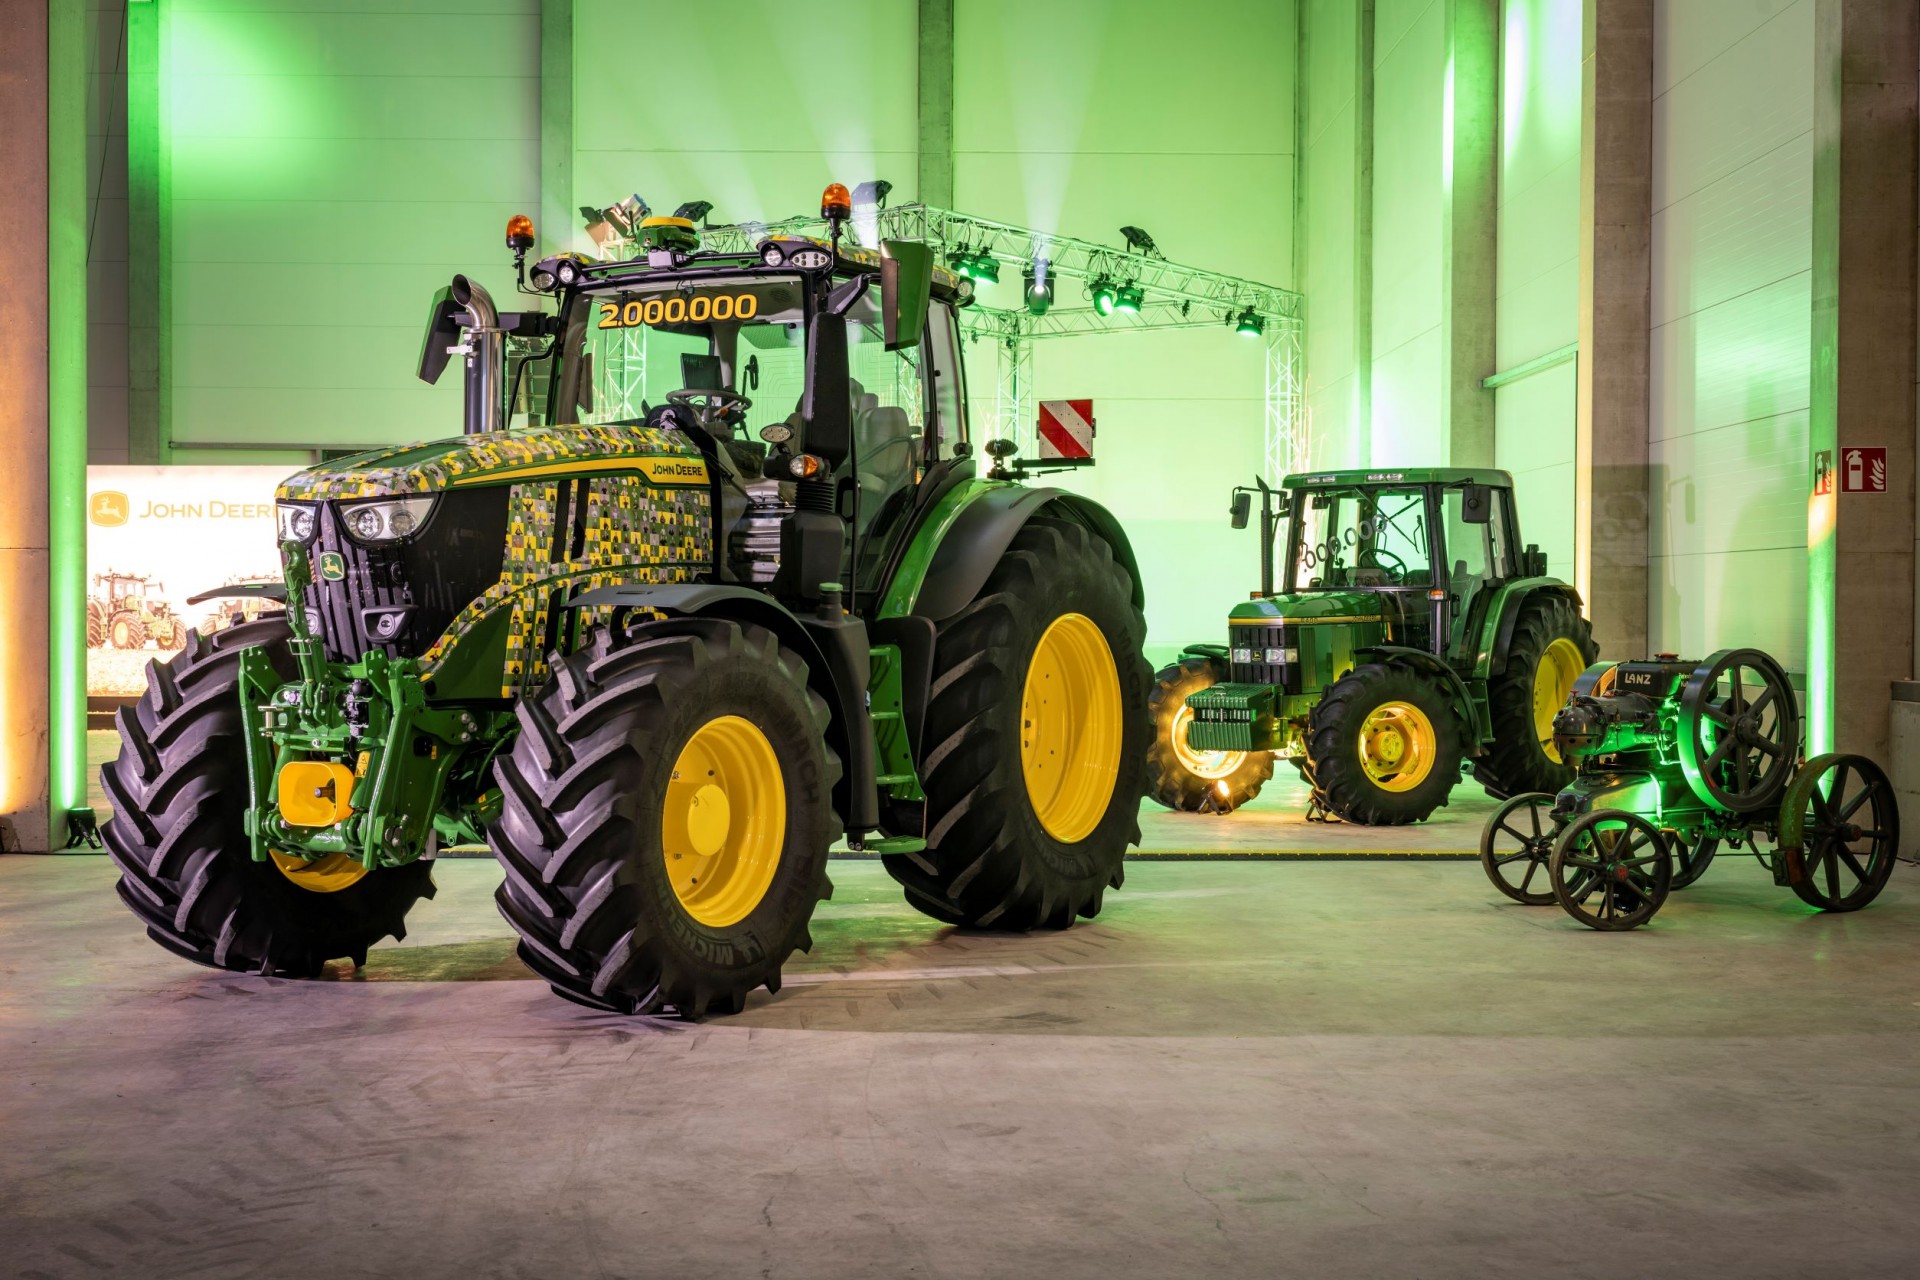 John Deere alcanza los 2 millones de tractores producidos en su fábrica alemana de Mannheim  Mannheim (Alemania), 23 de marzo de 2023 